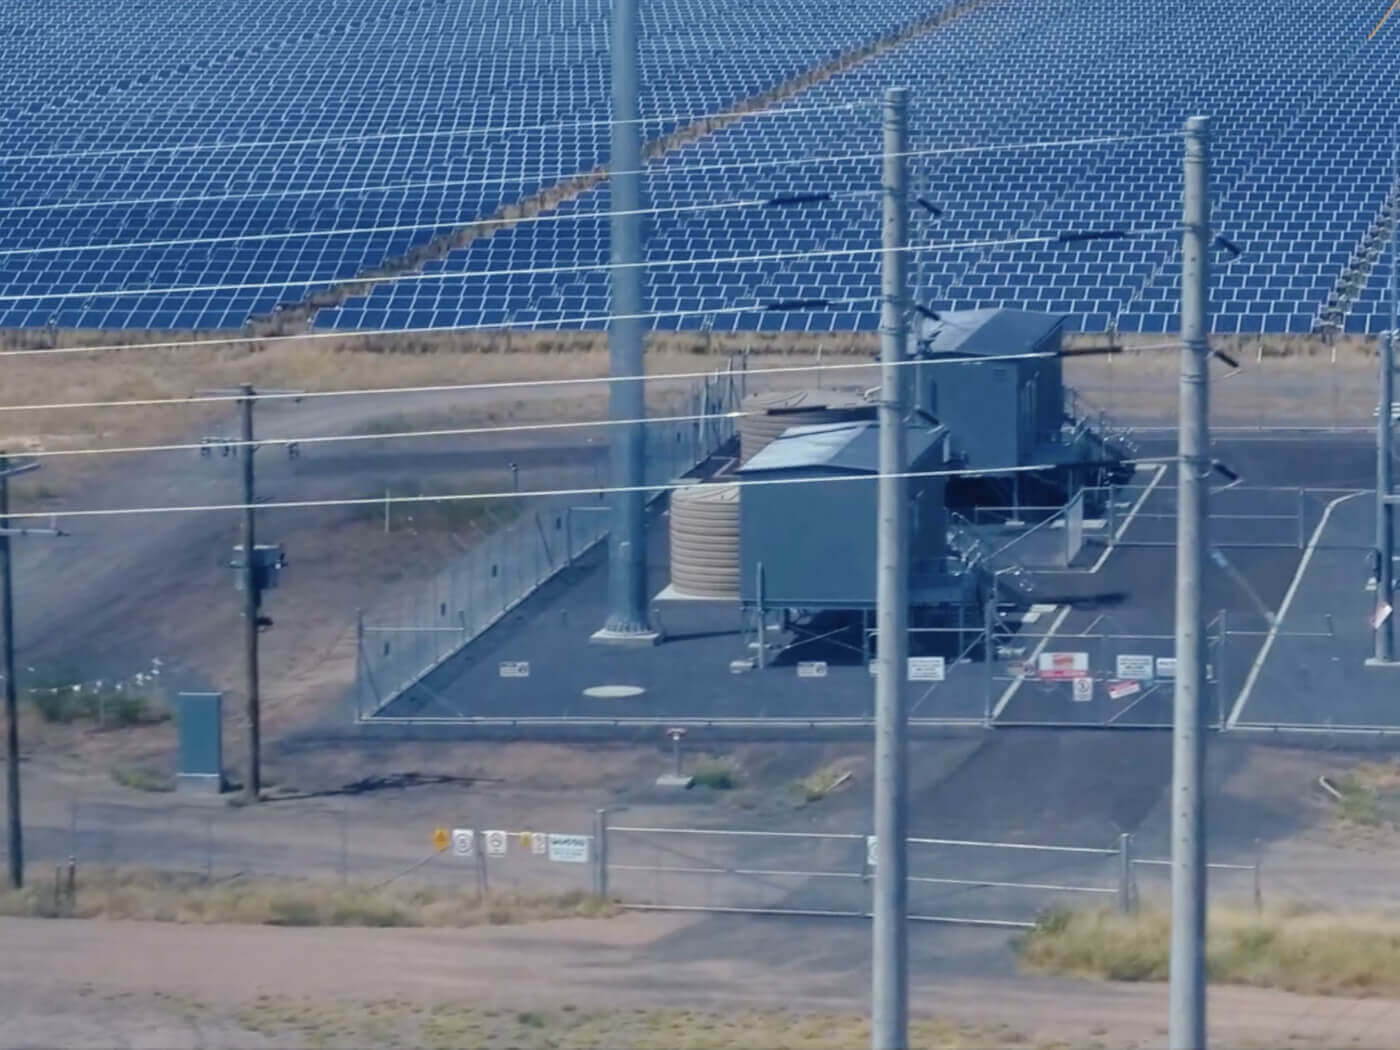 Solar utility location